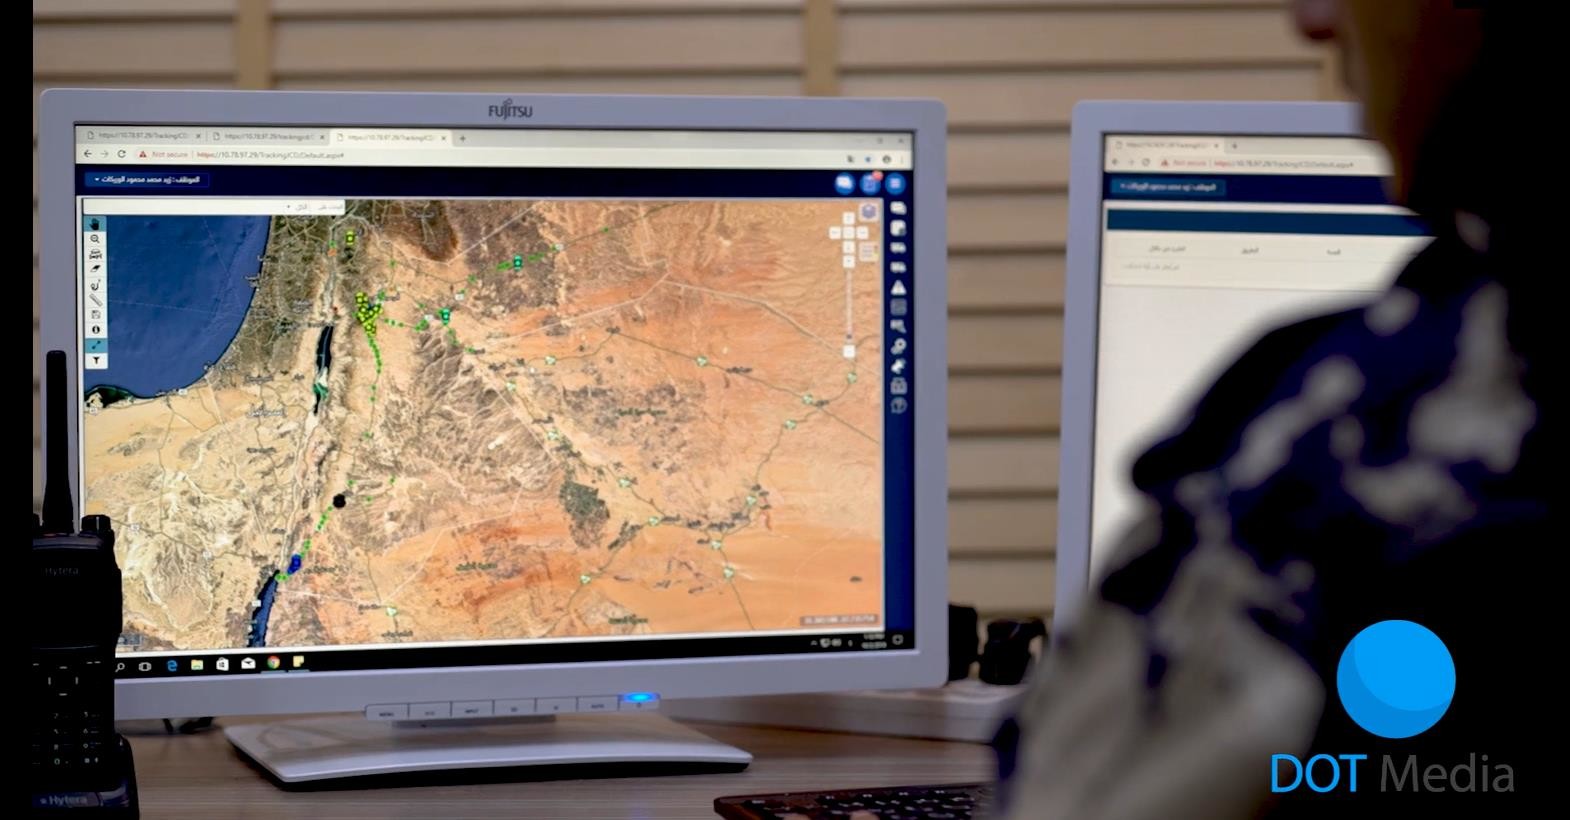 Laatste bedrijfscasus over Intelligente elektronische slottoepassing in douanetoezicht in Jordanië